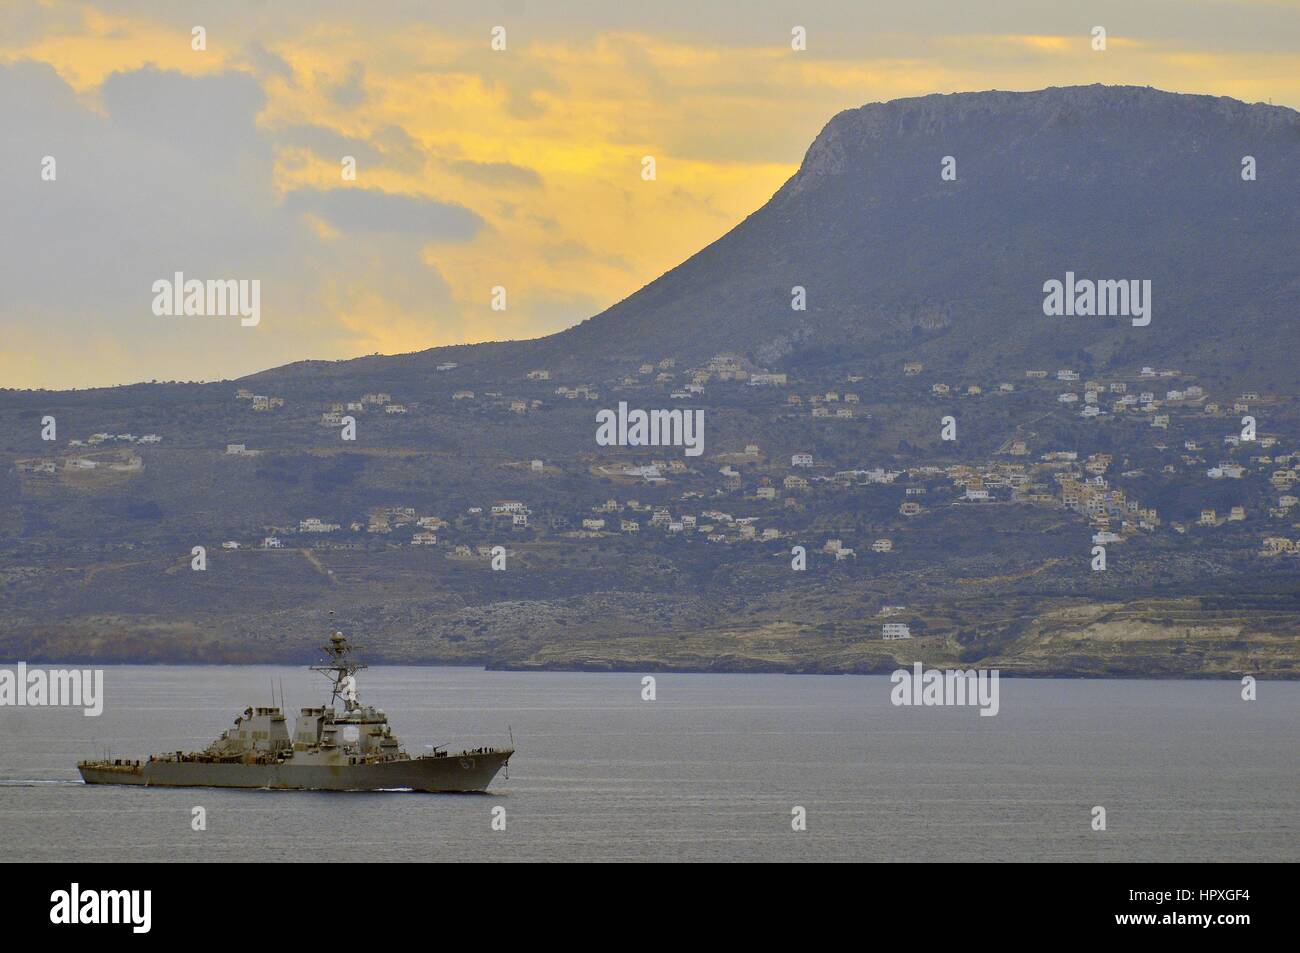 Die geführte Flugkörper Zerstörer USS Cole nähert sich Souda-Bucht, Griechenland, für einen Besuch des Hafens, 16. November 2012. Bild mit freundlicher Genehmigung Paul Farley / US Navy. Stockfoto